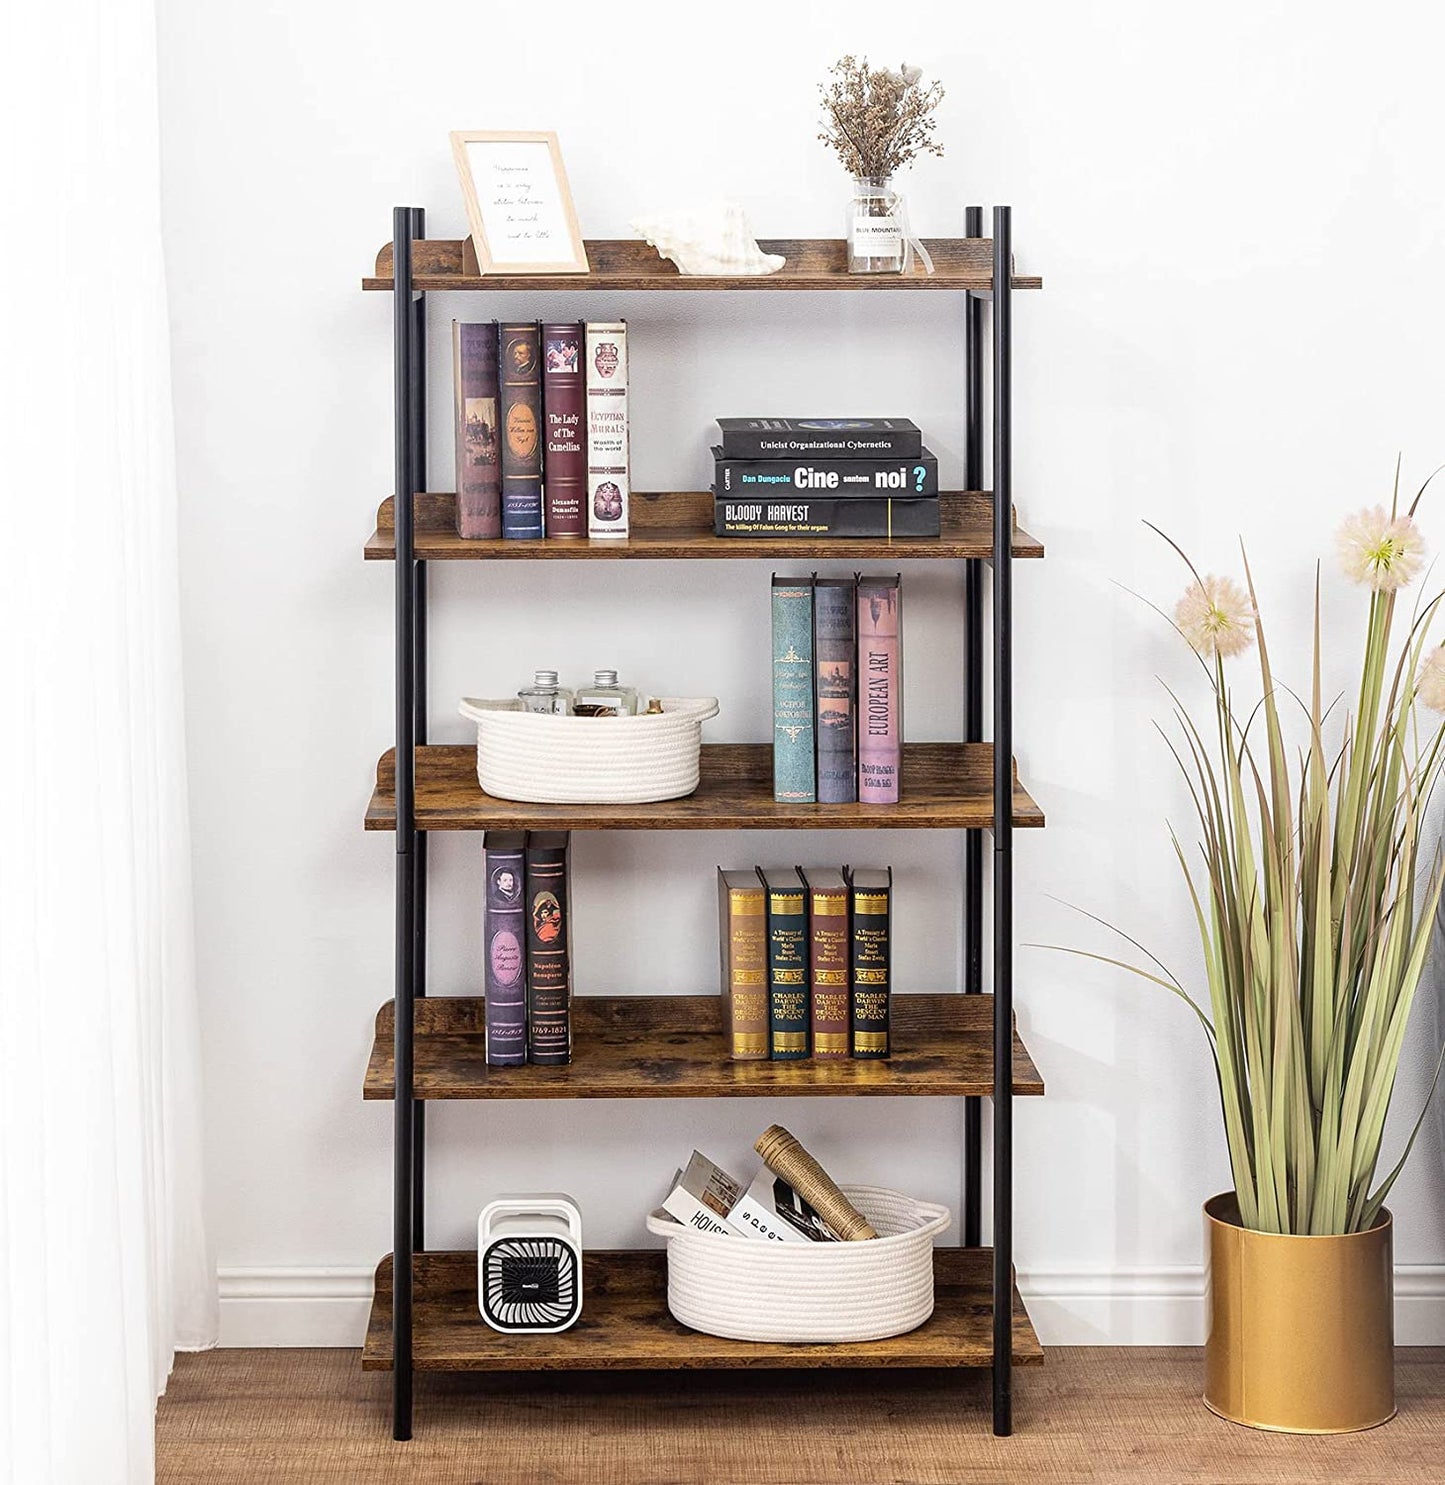 UNICOO - Bookshelf 5-Tier, Open Etagere Bookcase, Freestanding Bookshelves for Storage and Display, 5-Shelf Bookshelves for Living Room Bedroom Home Office